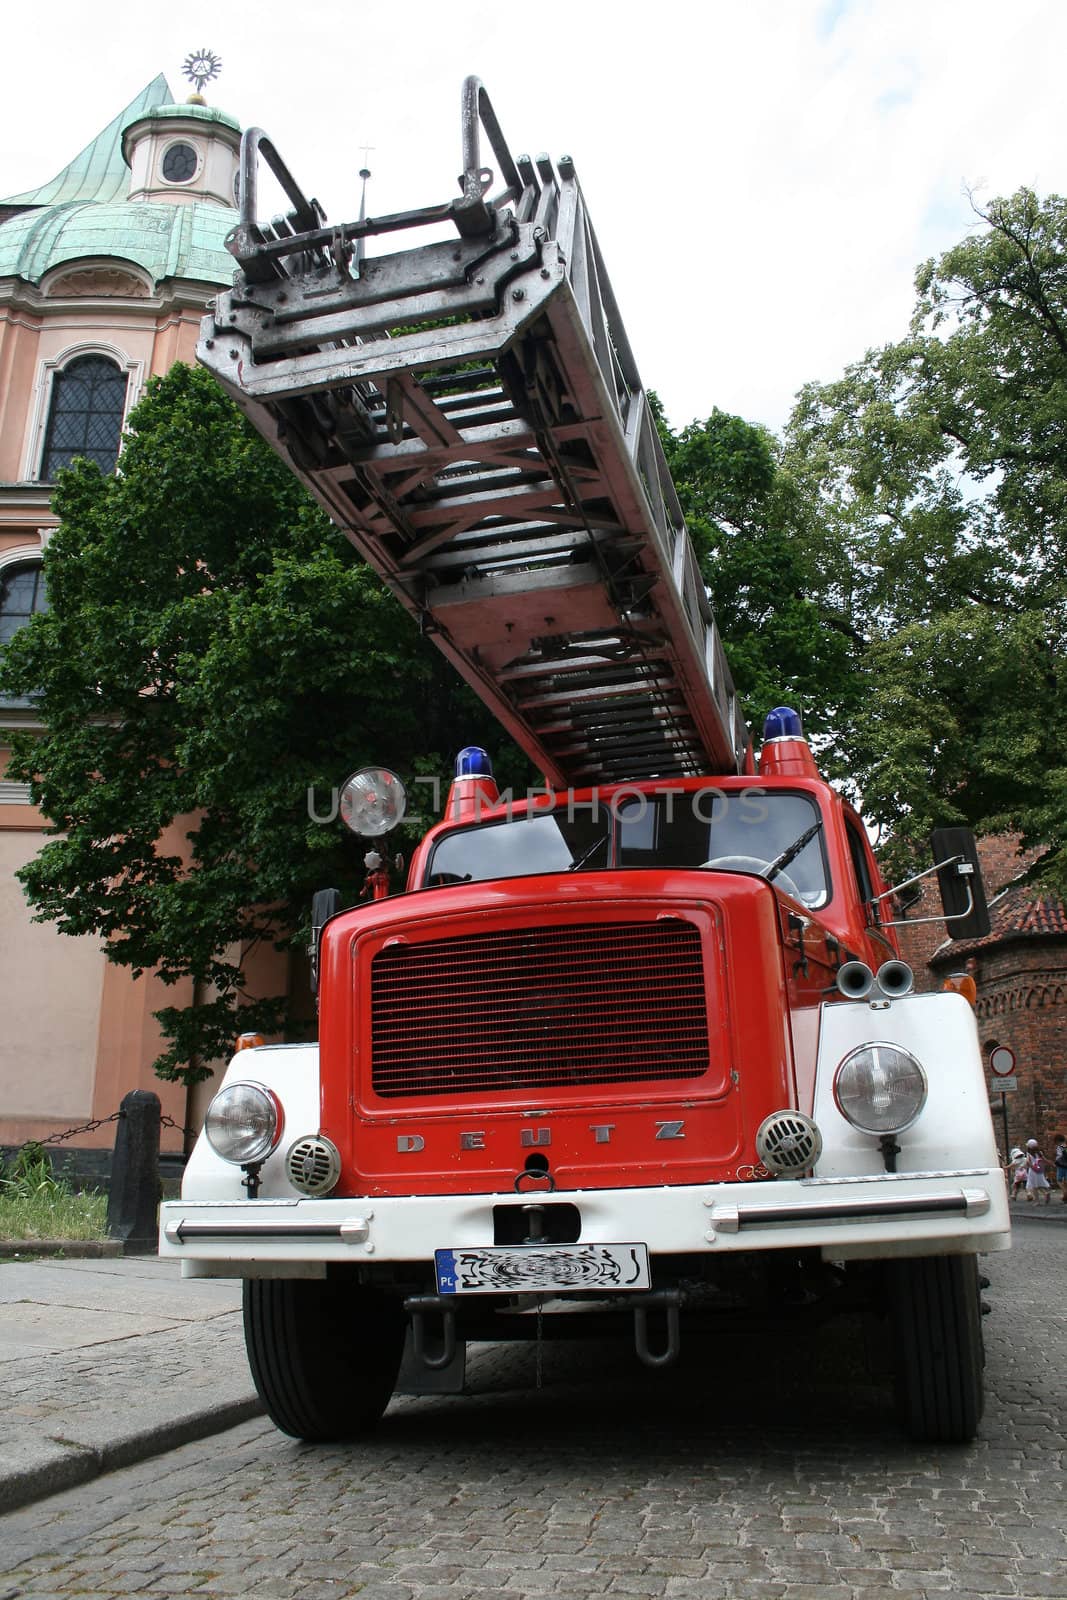 old fire truck by miczu